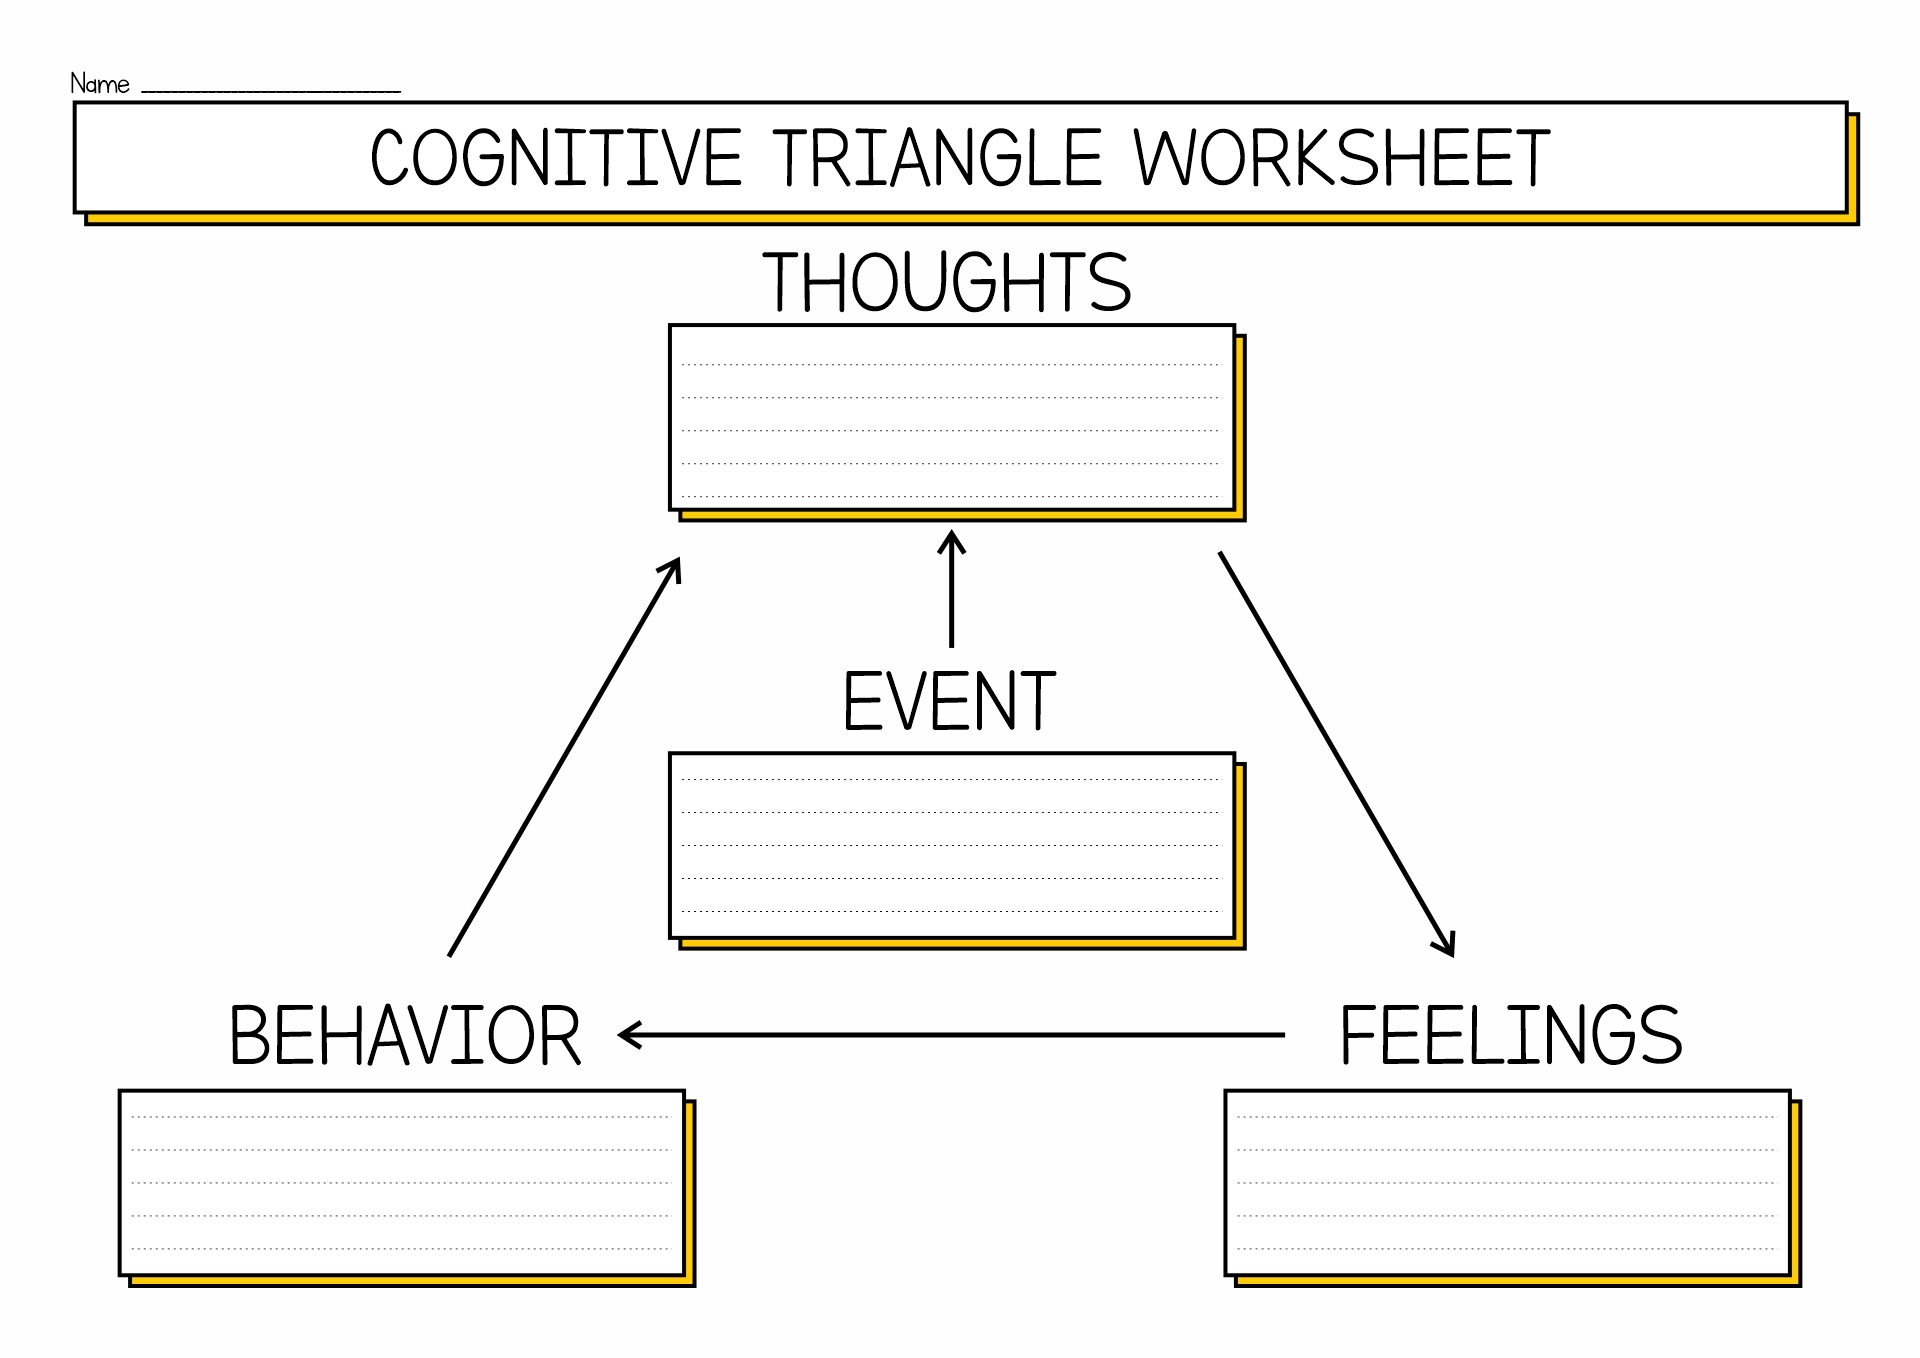 CBT Cognitive Triangle Worksheet Image